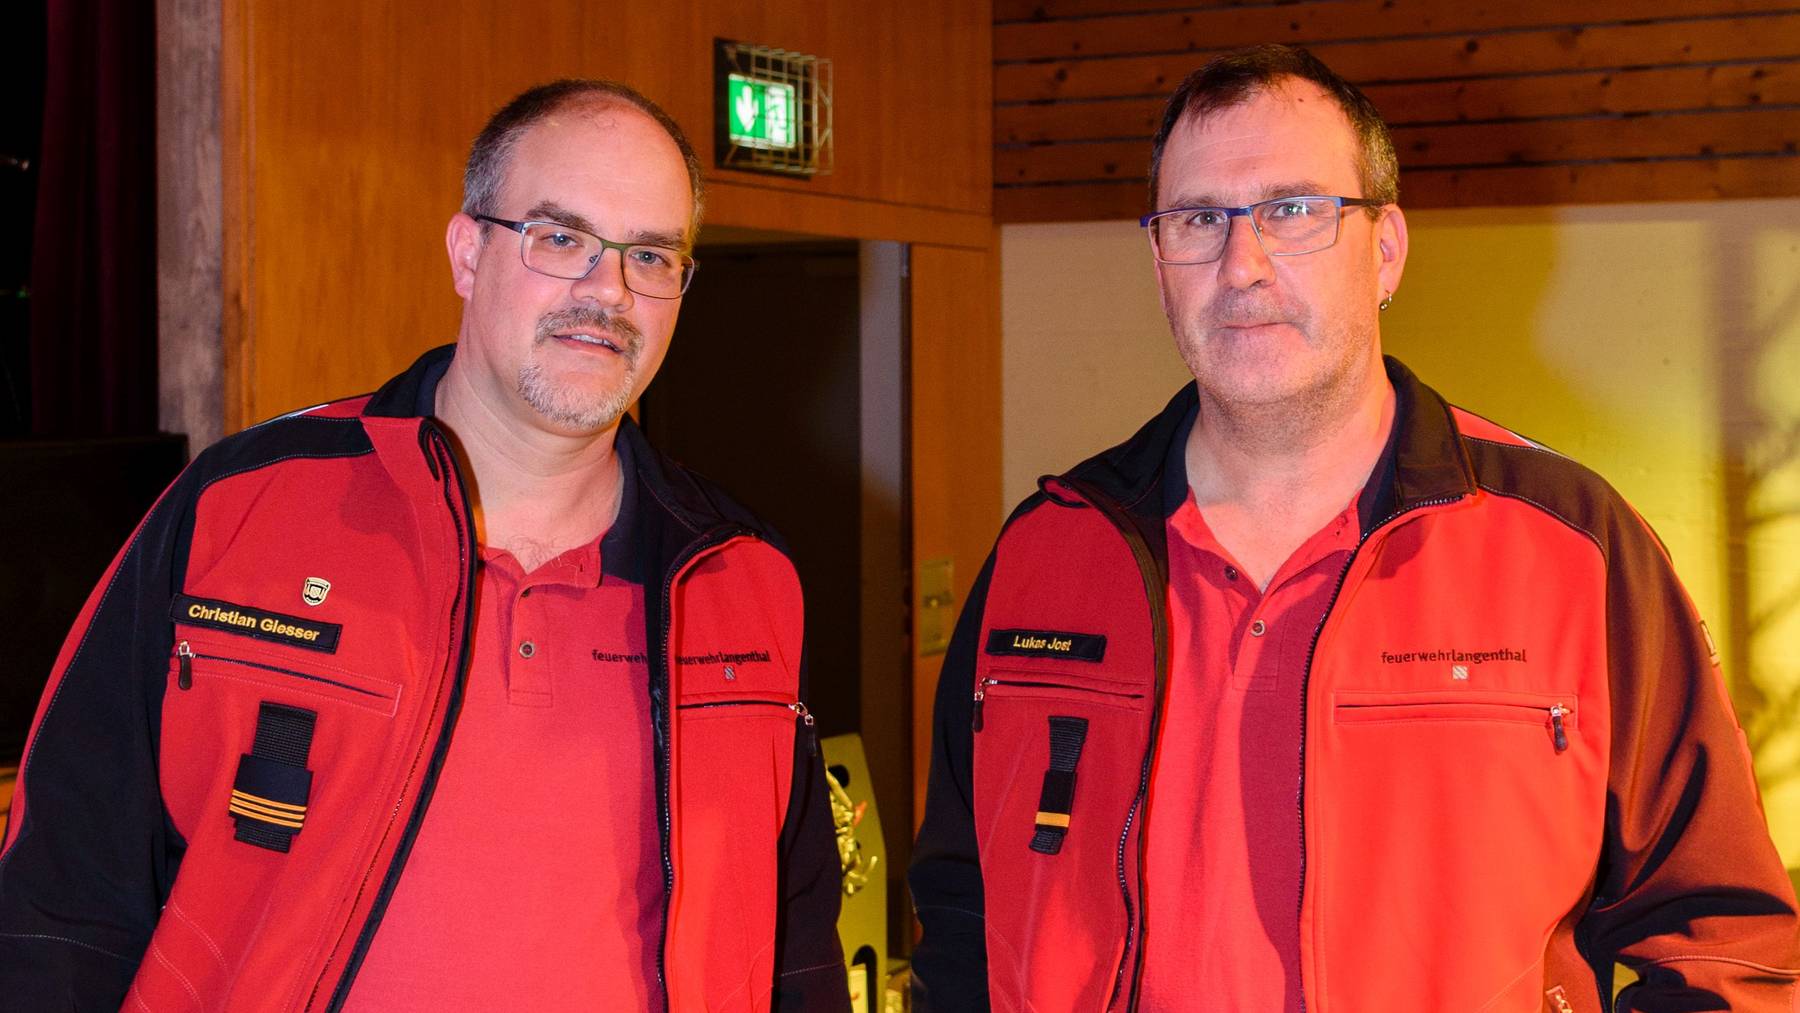 Der neue Kommandant Christian Giesser (links) und Lukas Jost, Feuerwehr Langenthal.